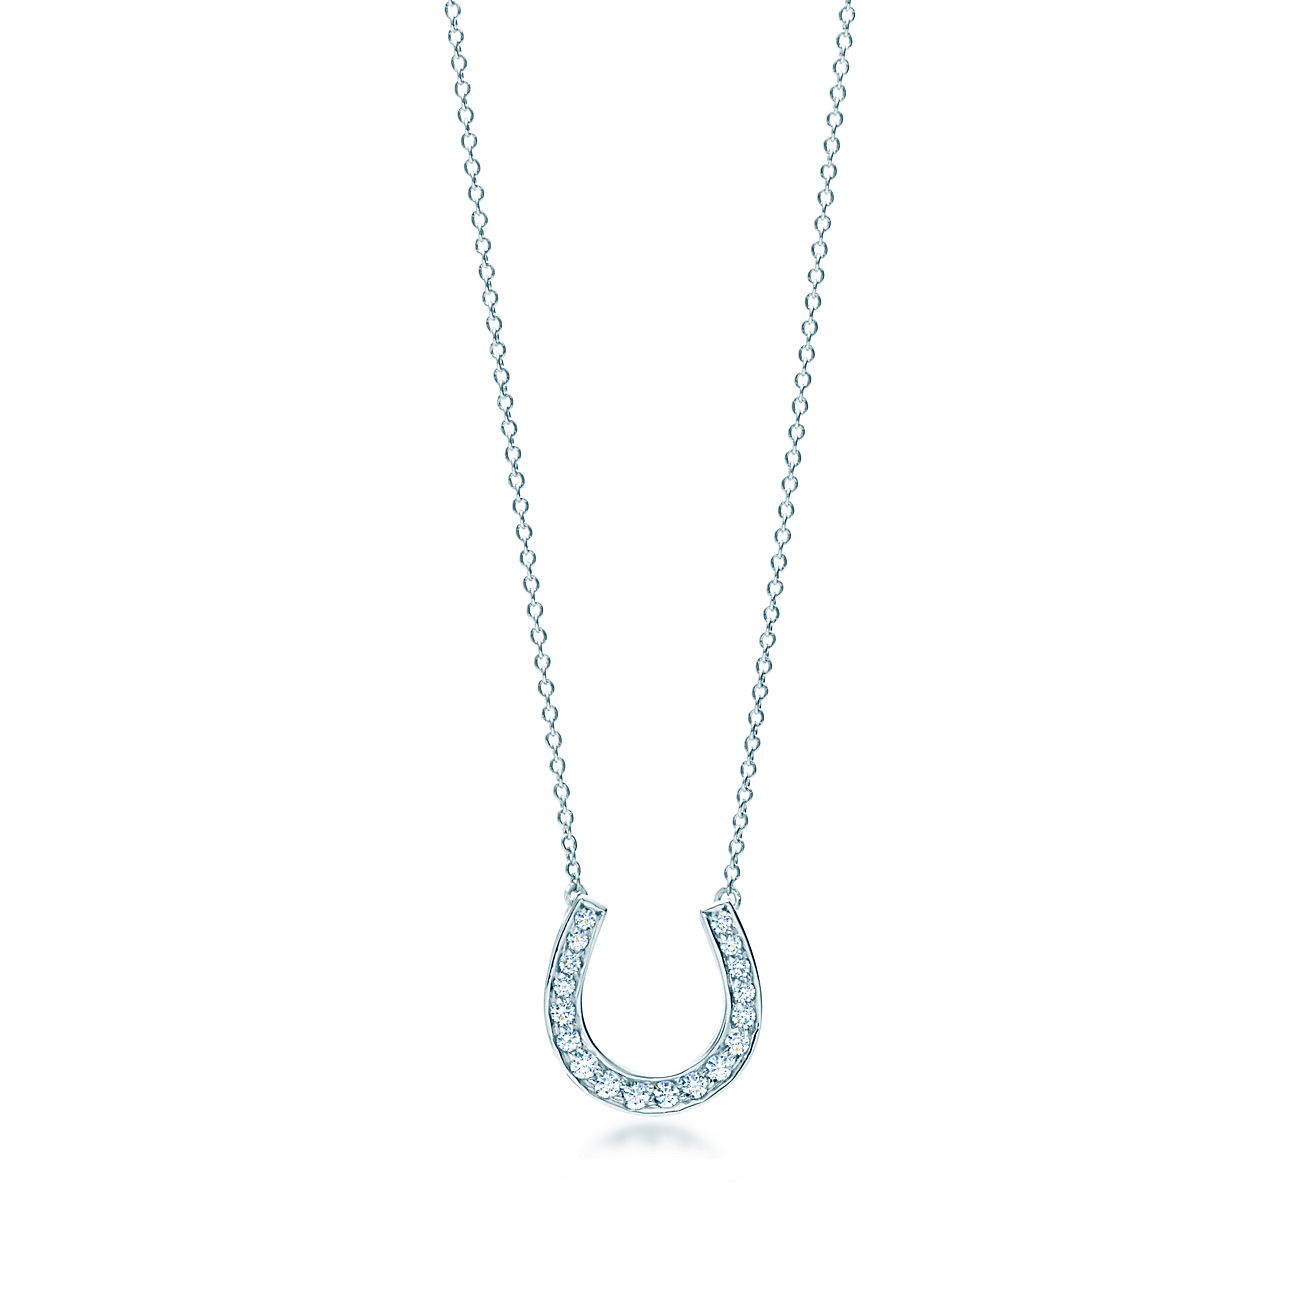 Horseshoe pendant of diamonds in 